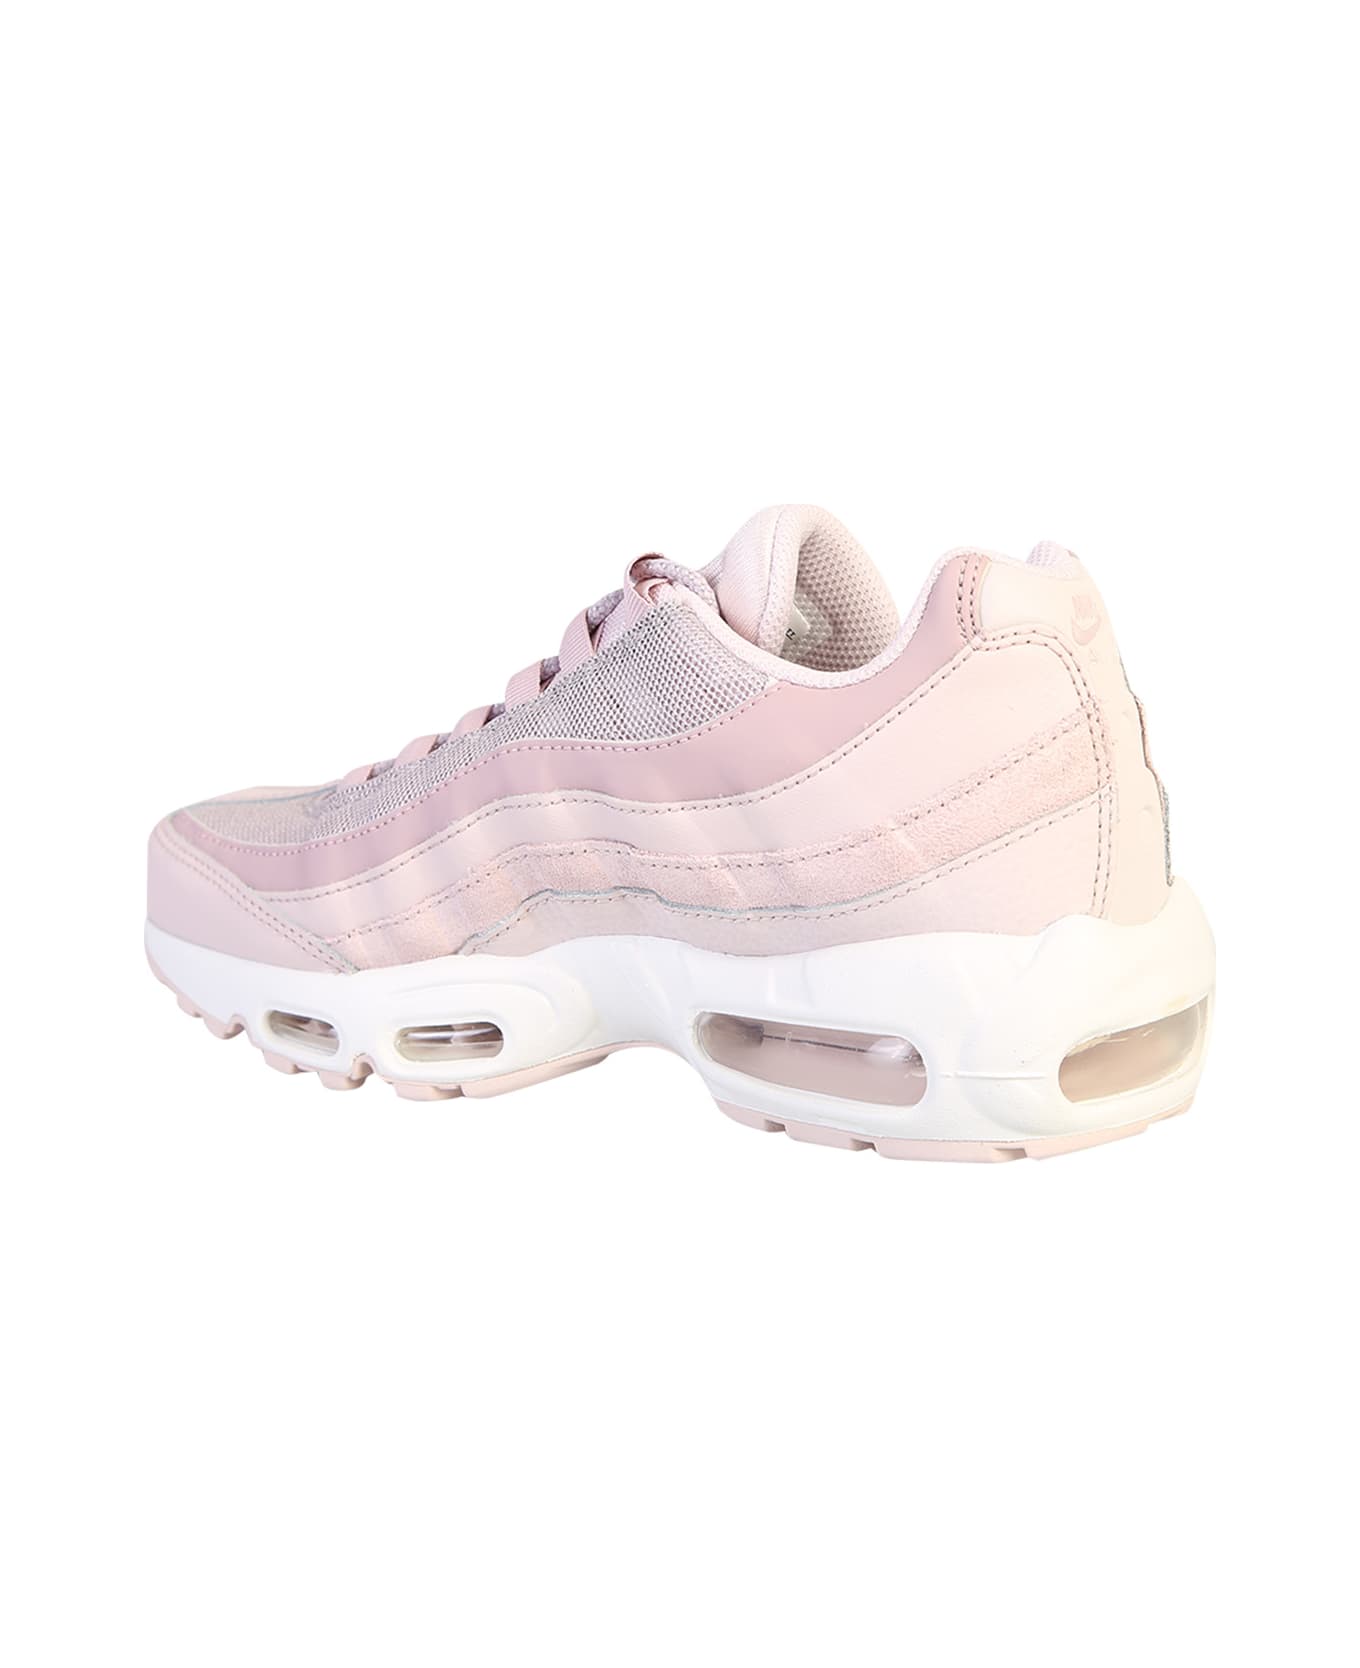 Nike Air Max 95 Sneakers - Pink